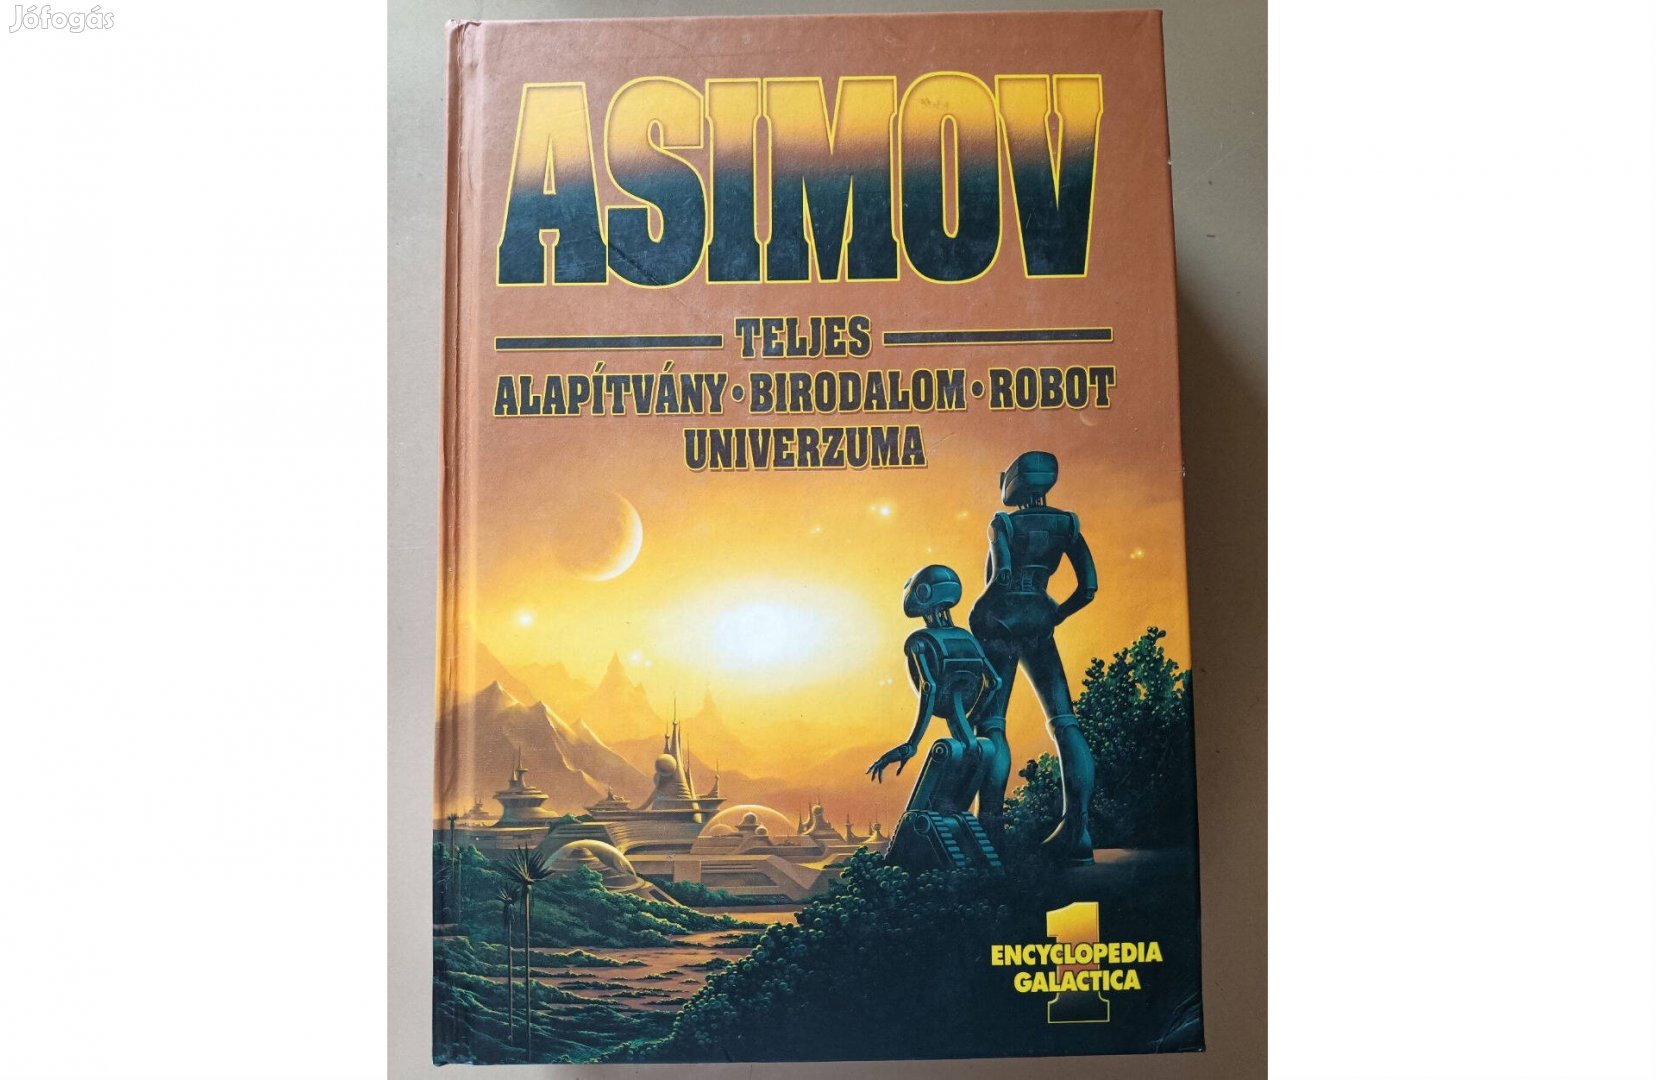 Isaac Asimov Teljes Alapítvány Birodalom Robot univerzuma 1. kötet